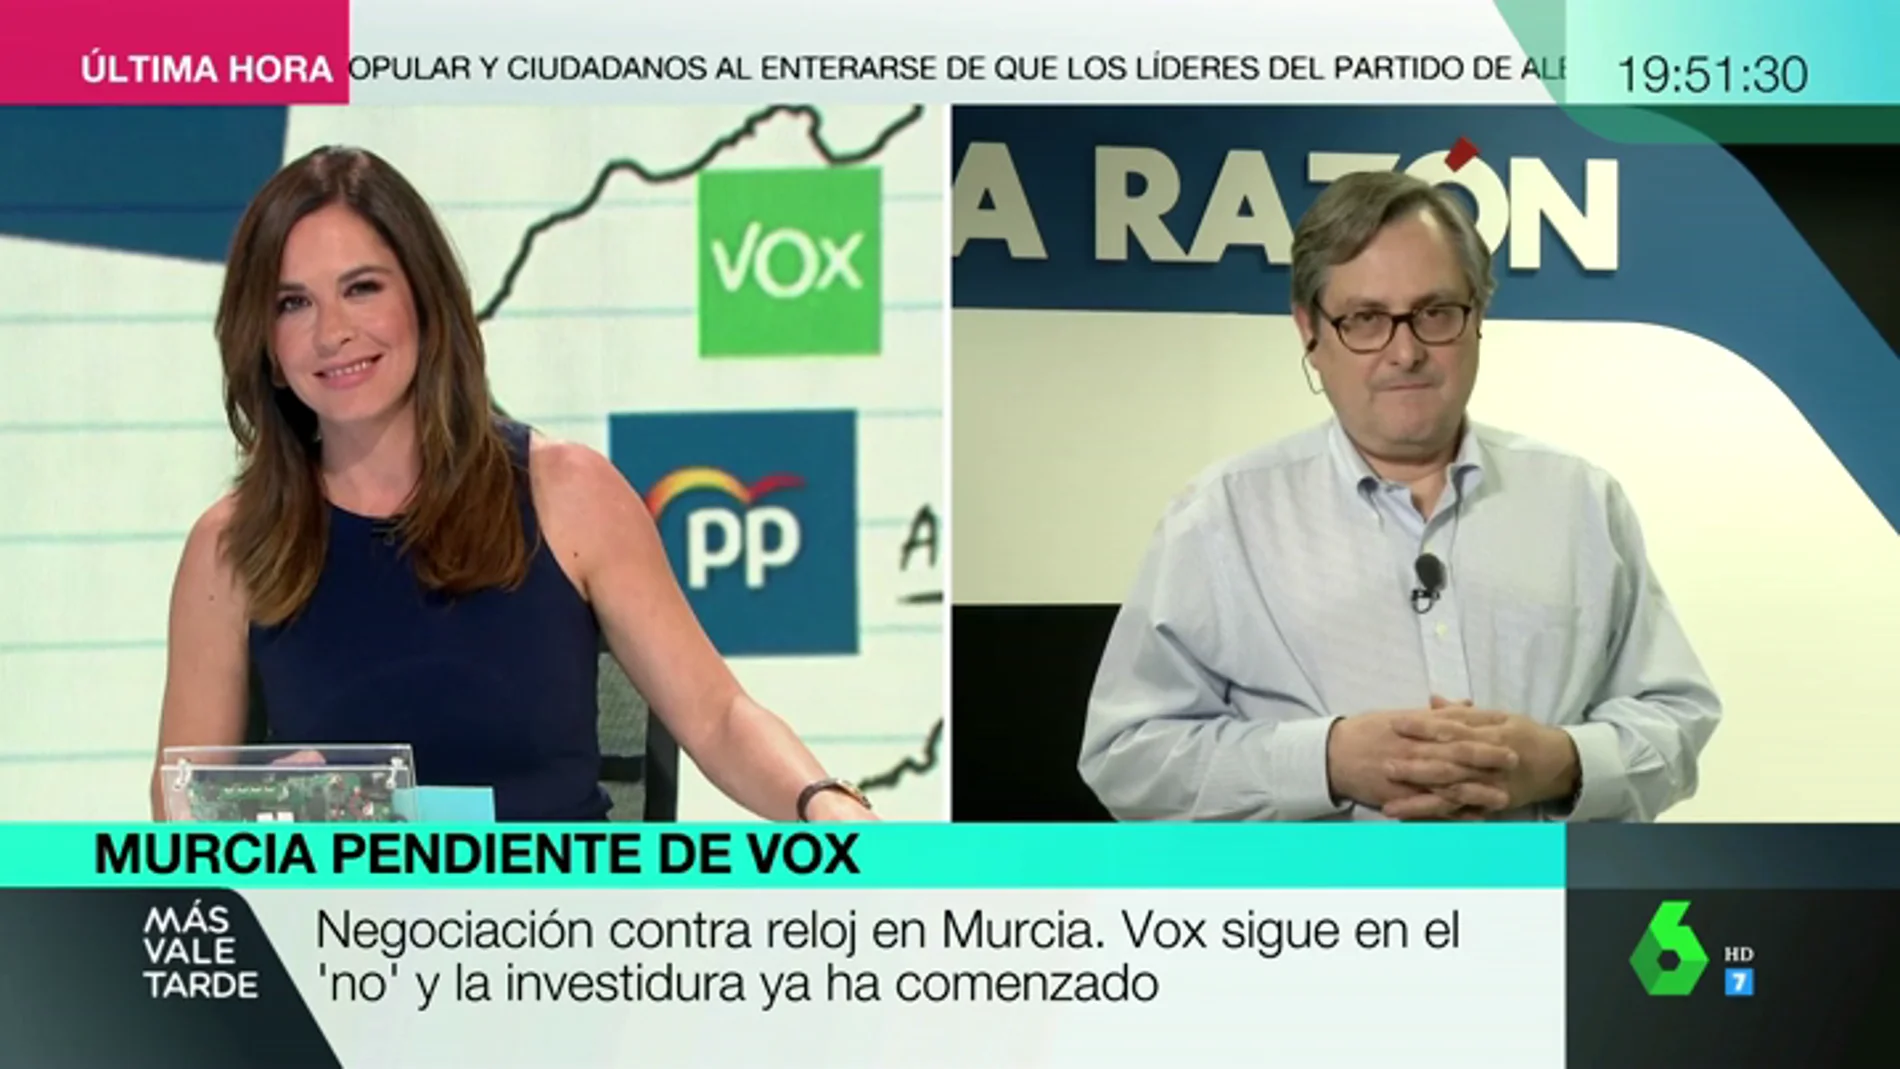  Francisco Marhuenda, sobre la tensa relación entre Vox y Ciudadanos: "No entiendo el complejo de pijoprogre de Cs"